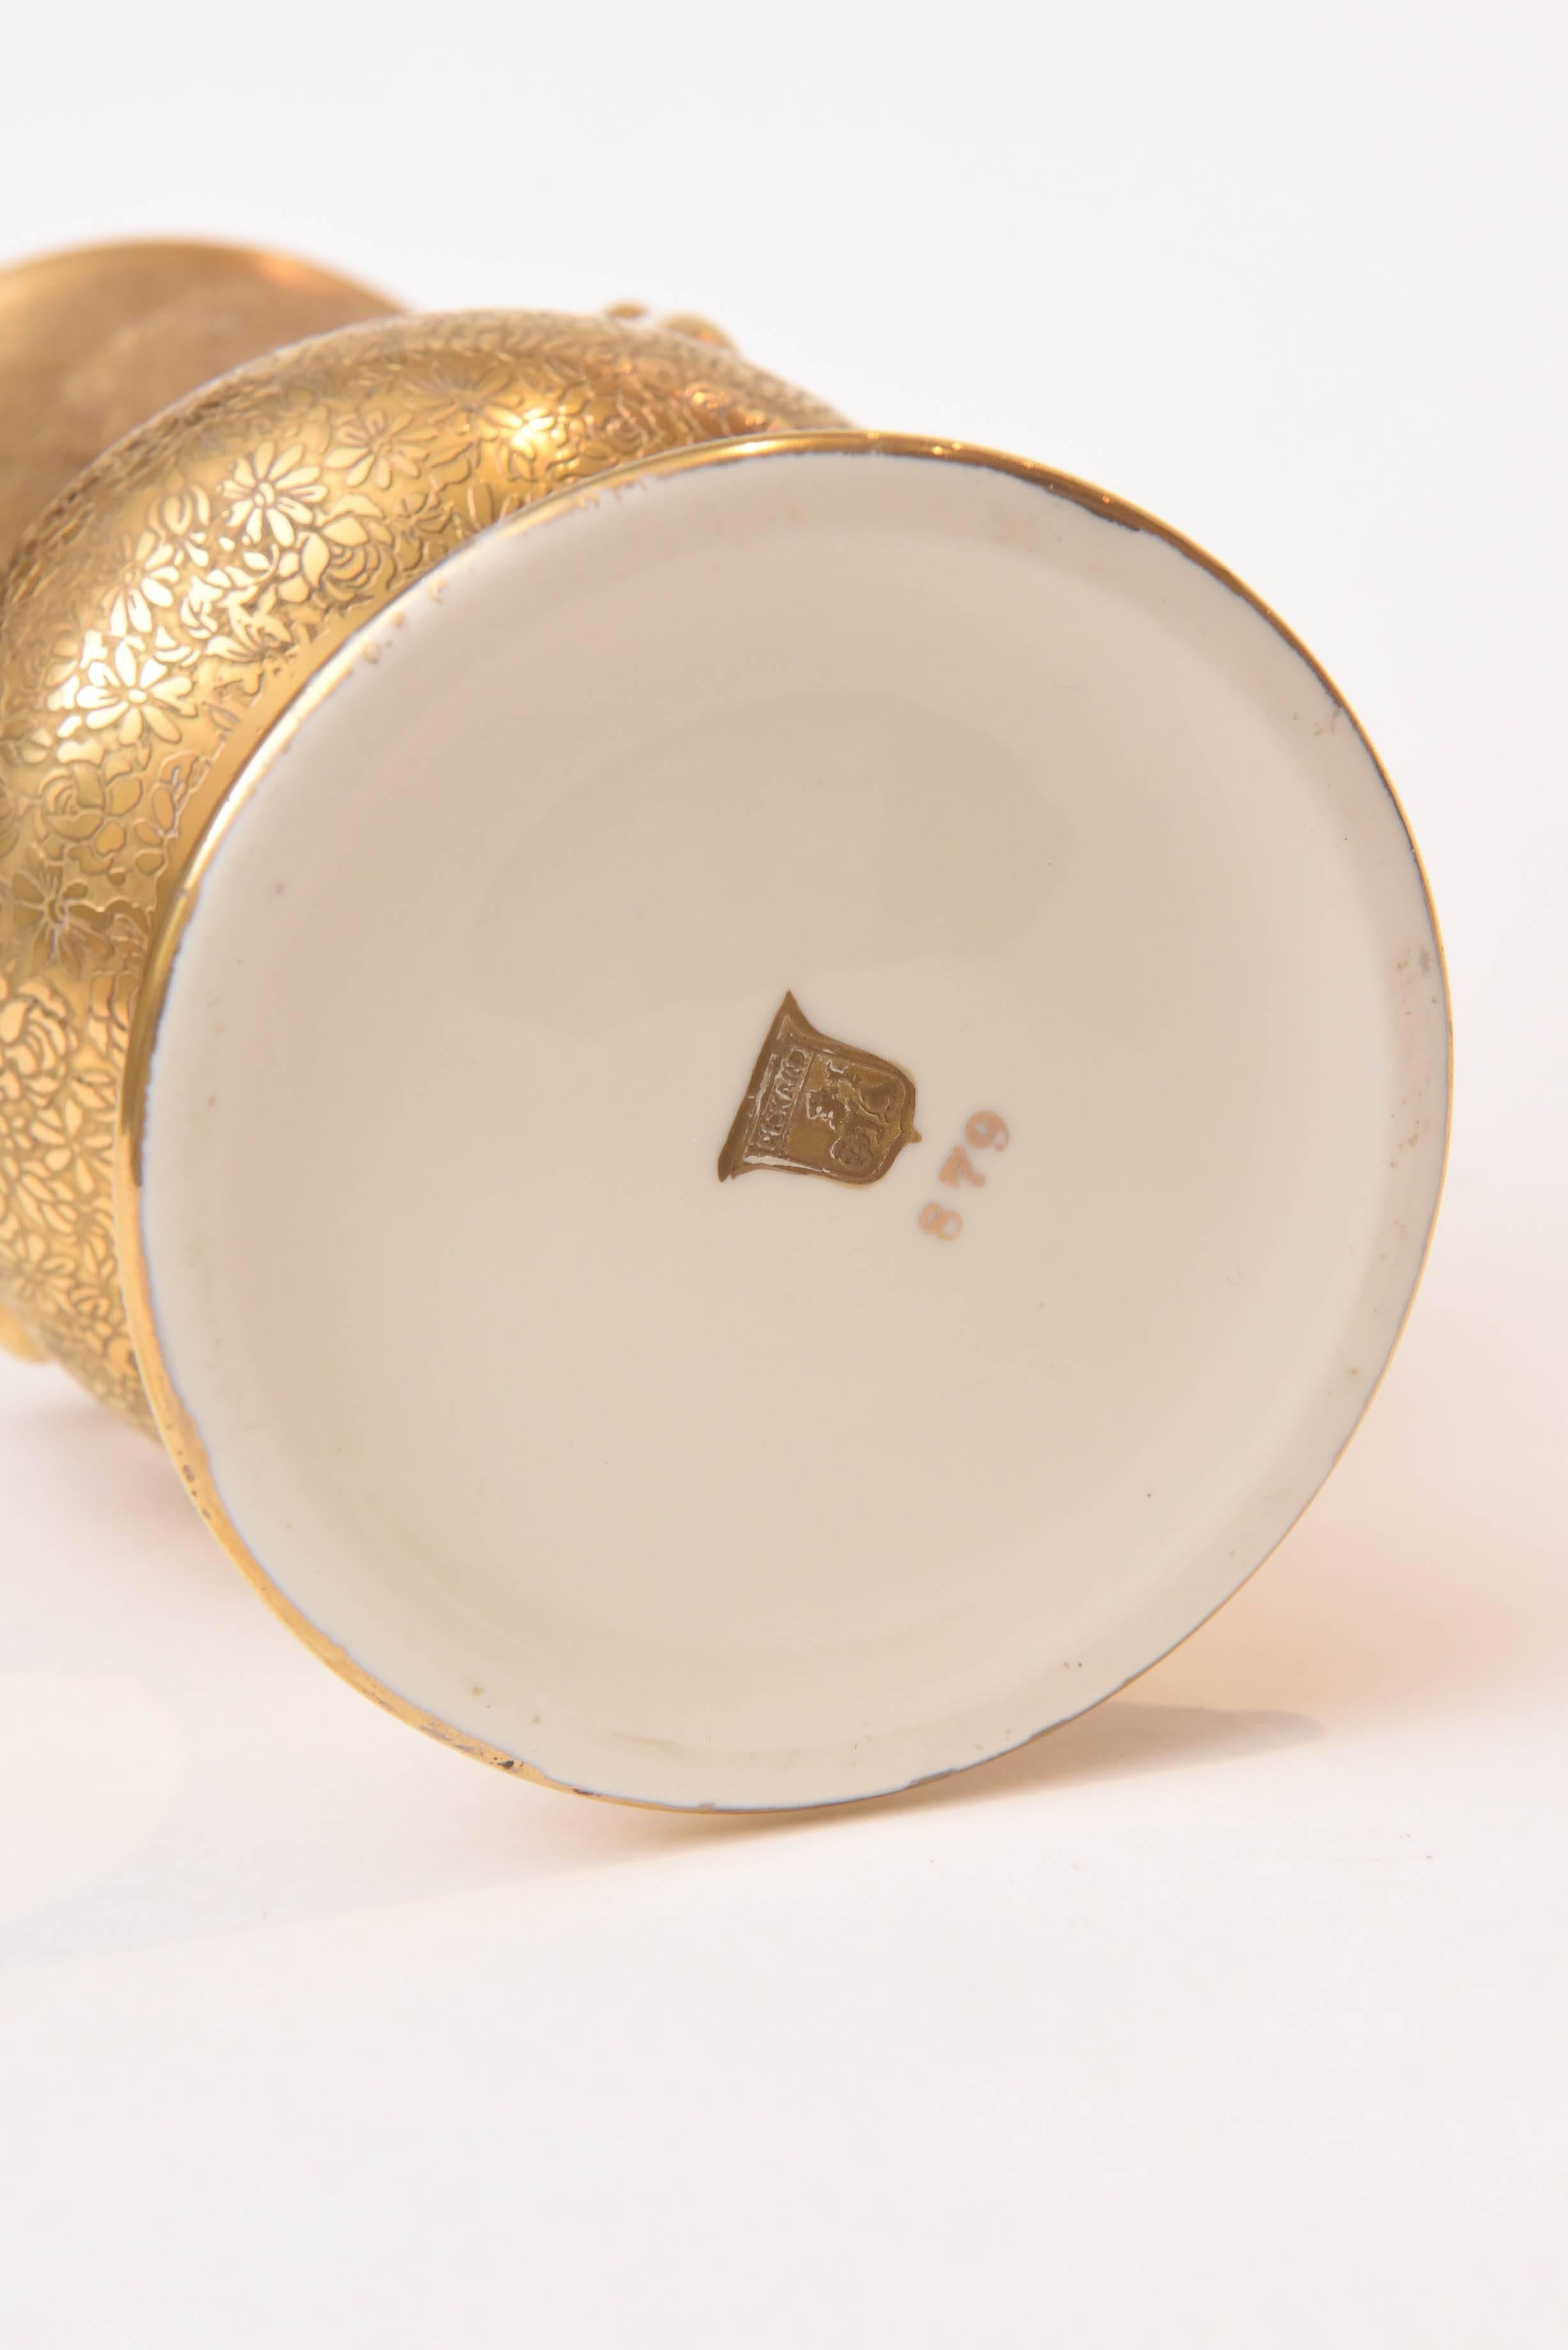 Antique All-Over 24-Karat Gold Acid Etched Handel Vase with Light Green Interior 1